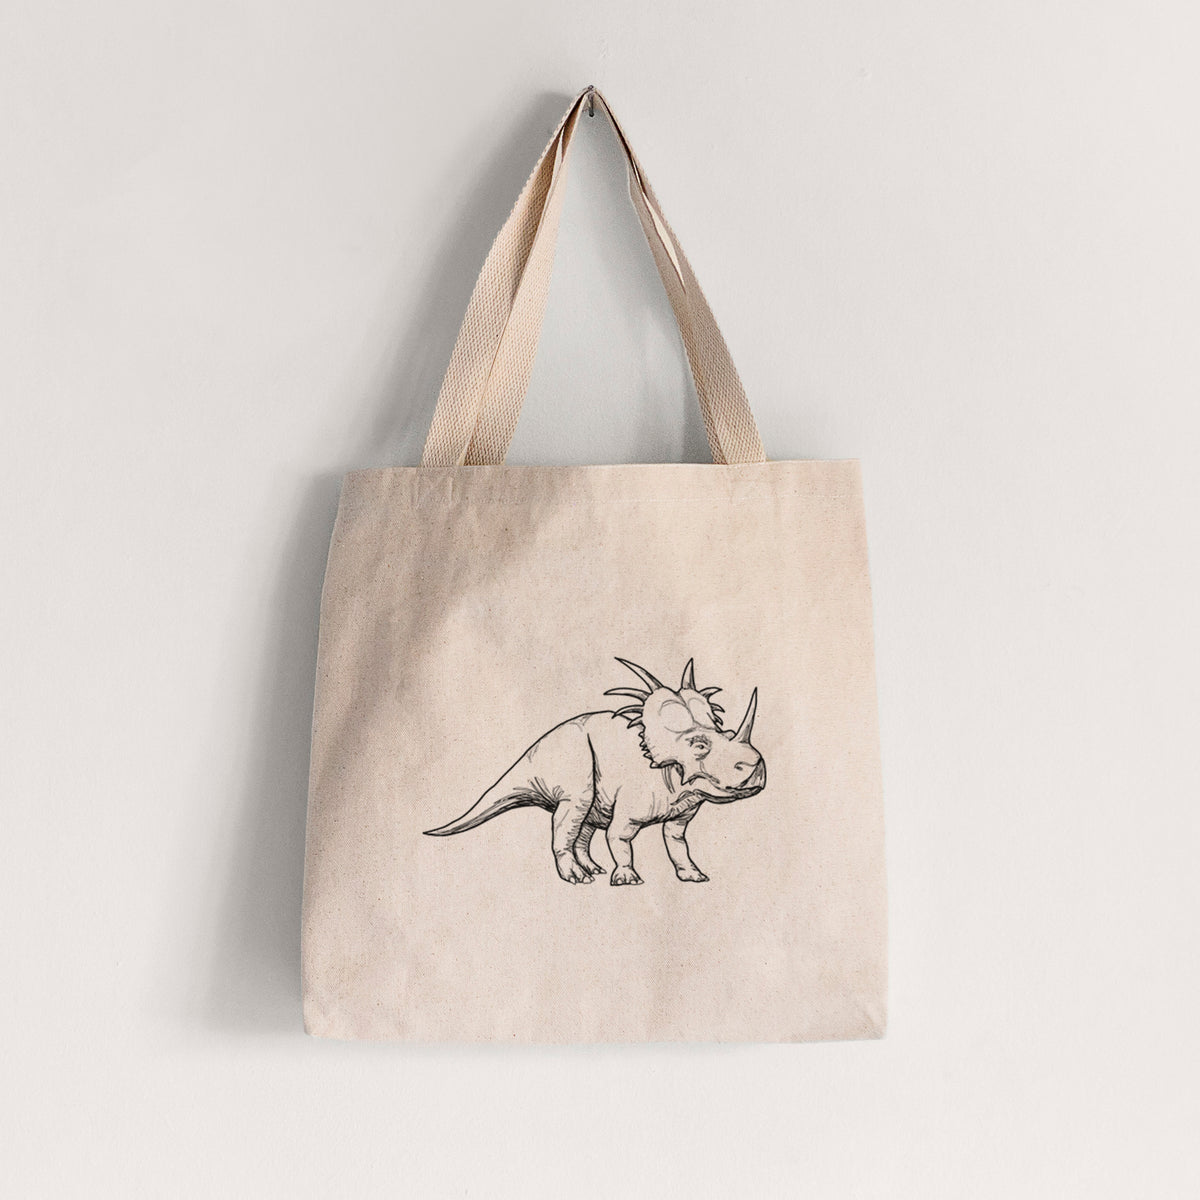 Styracosaurus Albertensis - Tote Bag